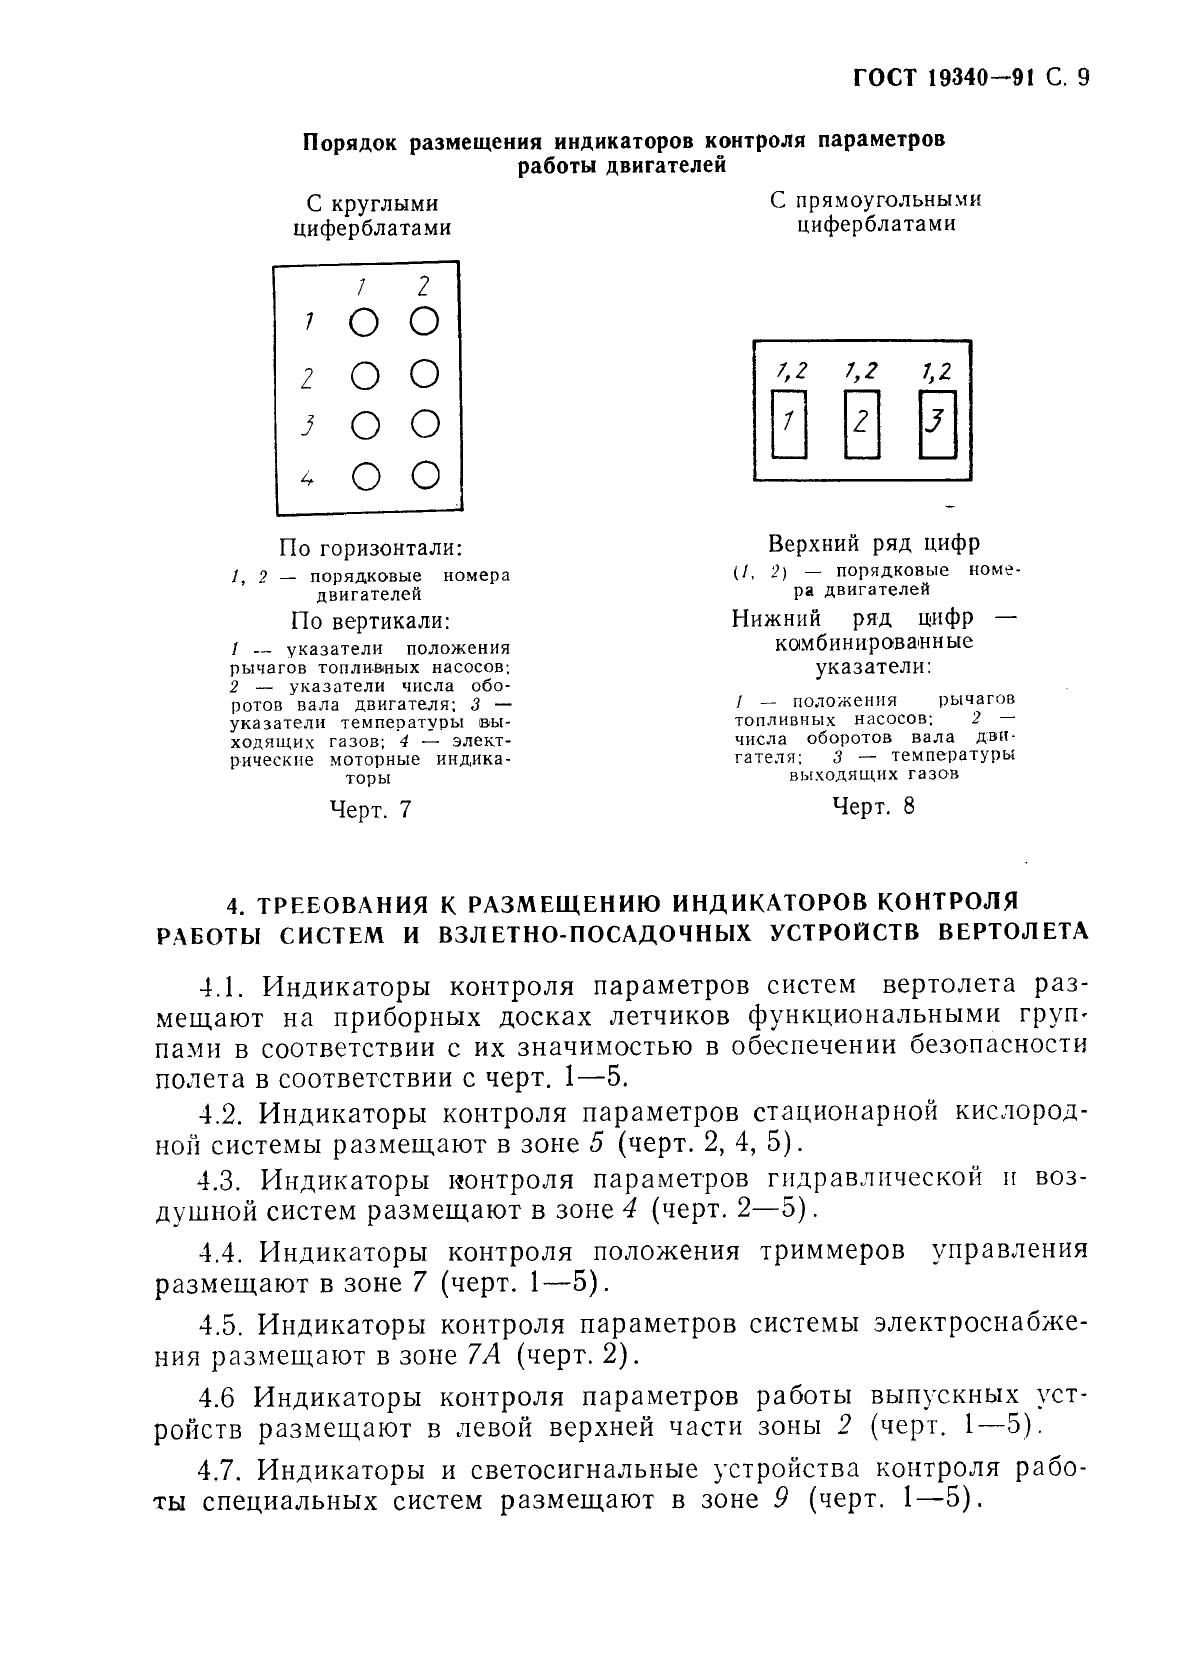 ГОСТ 19340-91 Доски приборные кабин вертолетов. Требования к компоновке и установке приборных досок летчиков (фото 11 из 16)